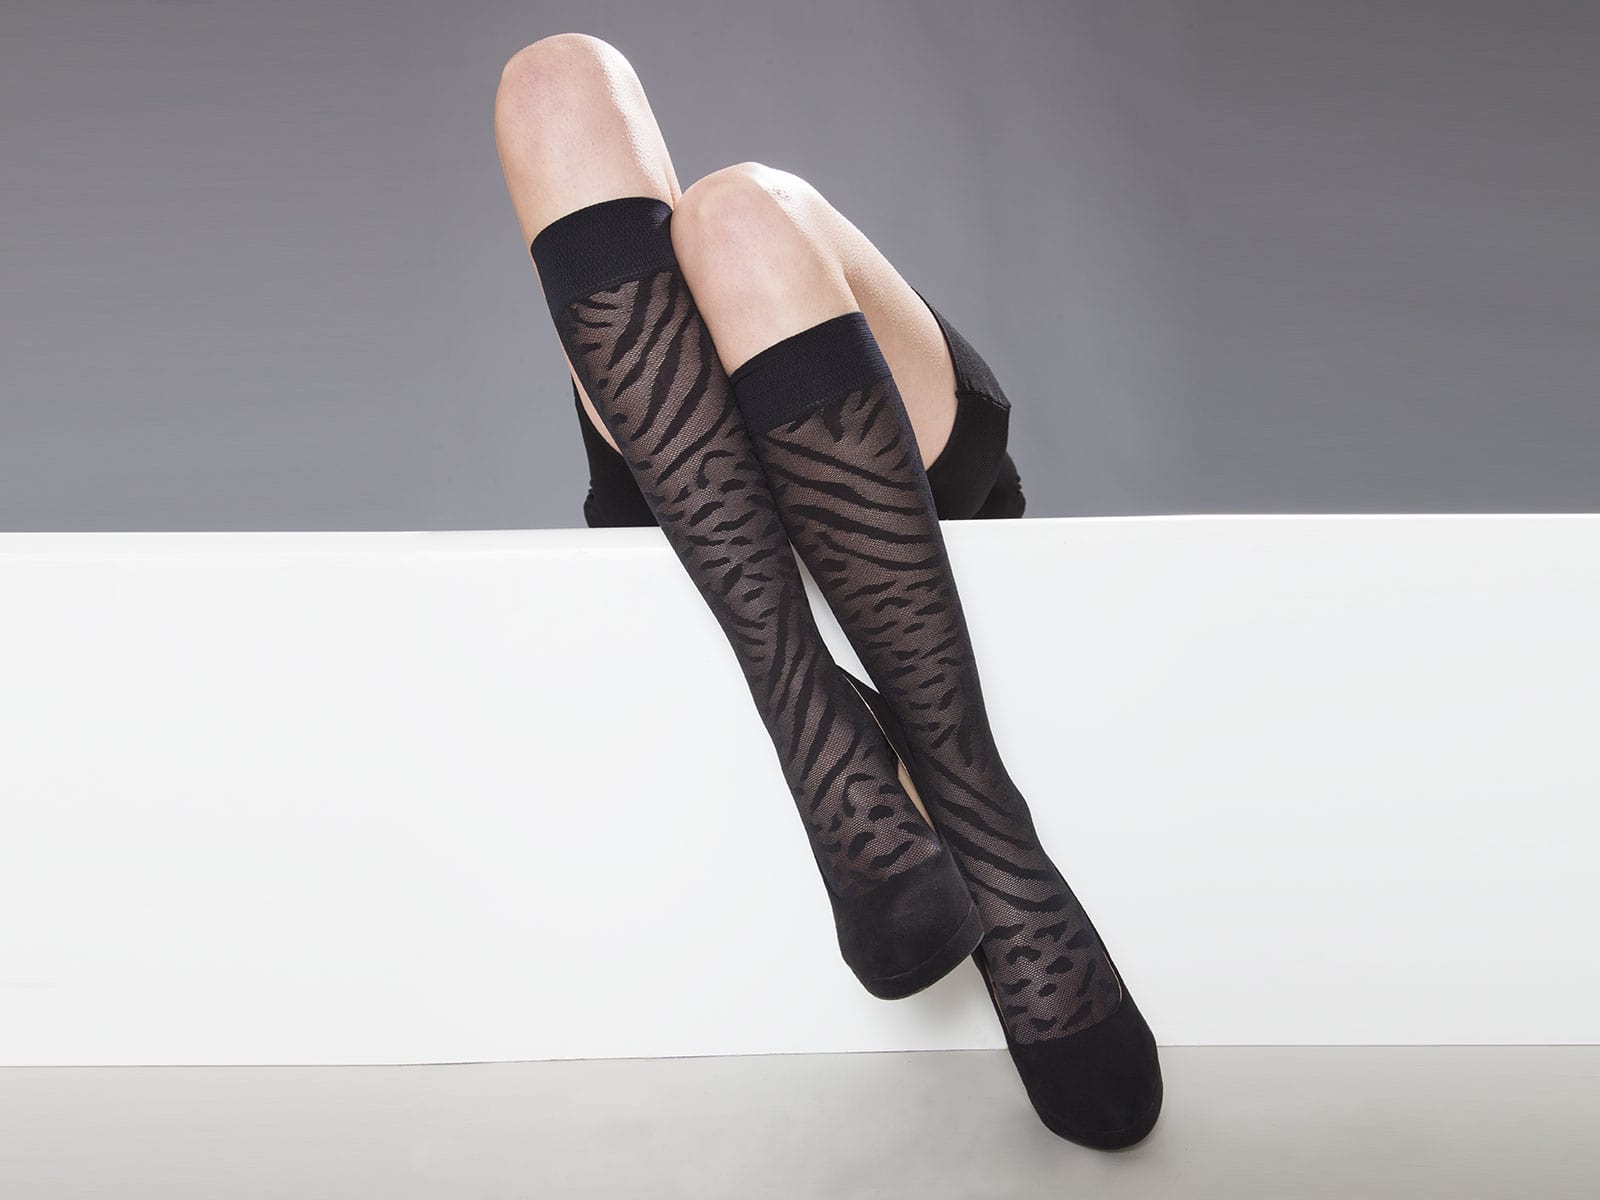 https://www.solidea.com//storage/2019/04/en-elastic-stockings-no-problem-with-solidea_5cb6e7d15c52f.jpg